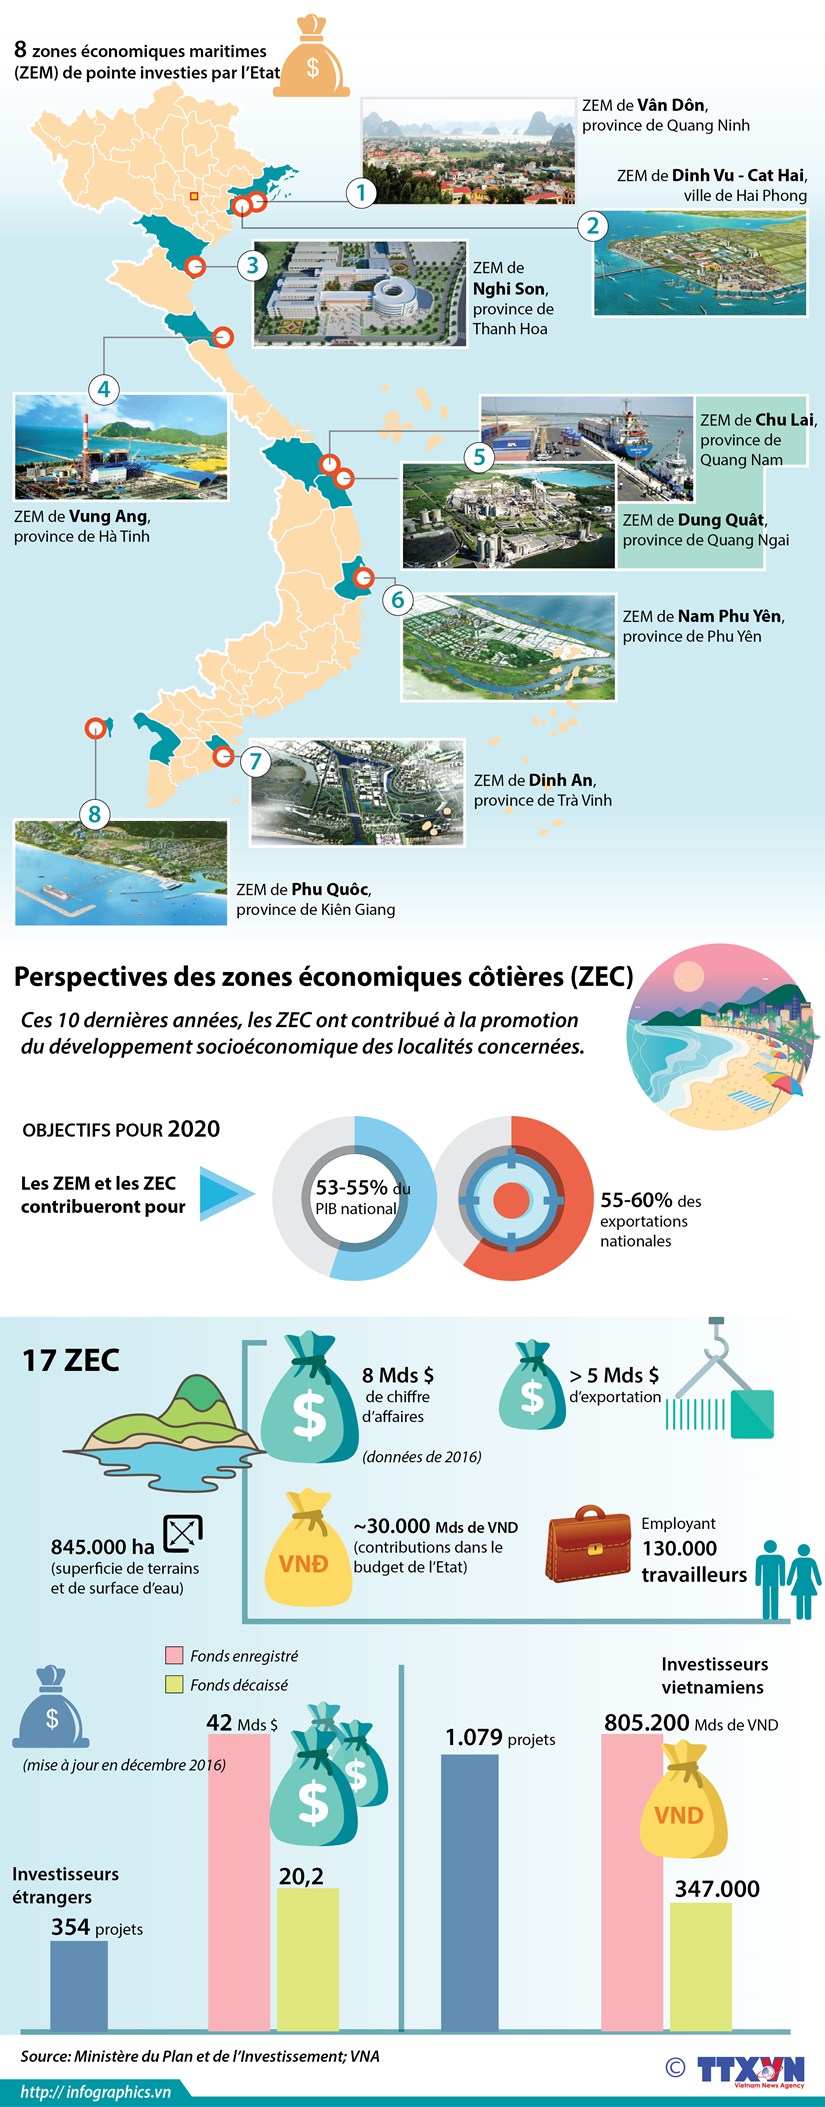 [Infographie] Les ZE maritimes et cotieres au Vietnam hinh anh 1